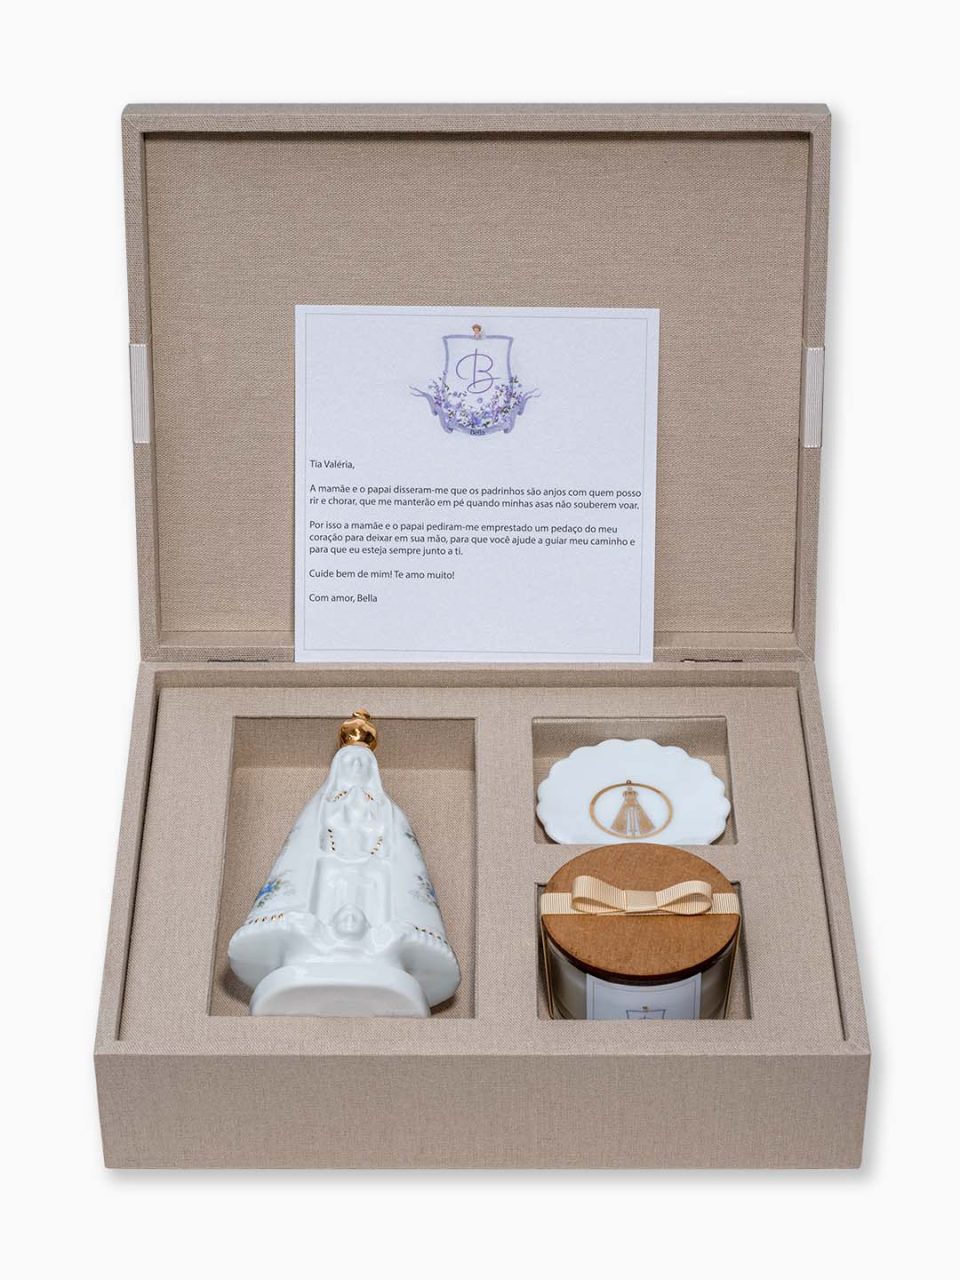 Classic Kit Personalizado I em caixa de MDF forrada com vela perfumada, um jóia do dia e santinha em porcelana pintada a mão com detalhe de ouro + convite